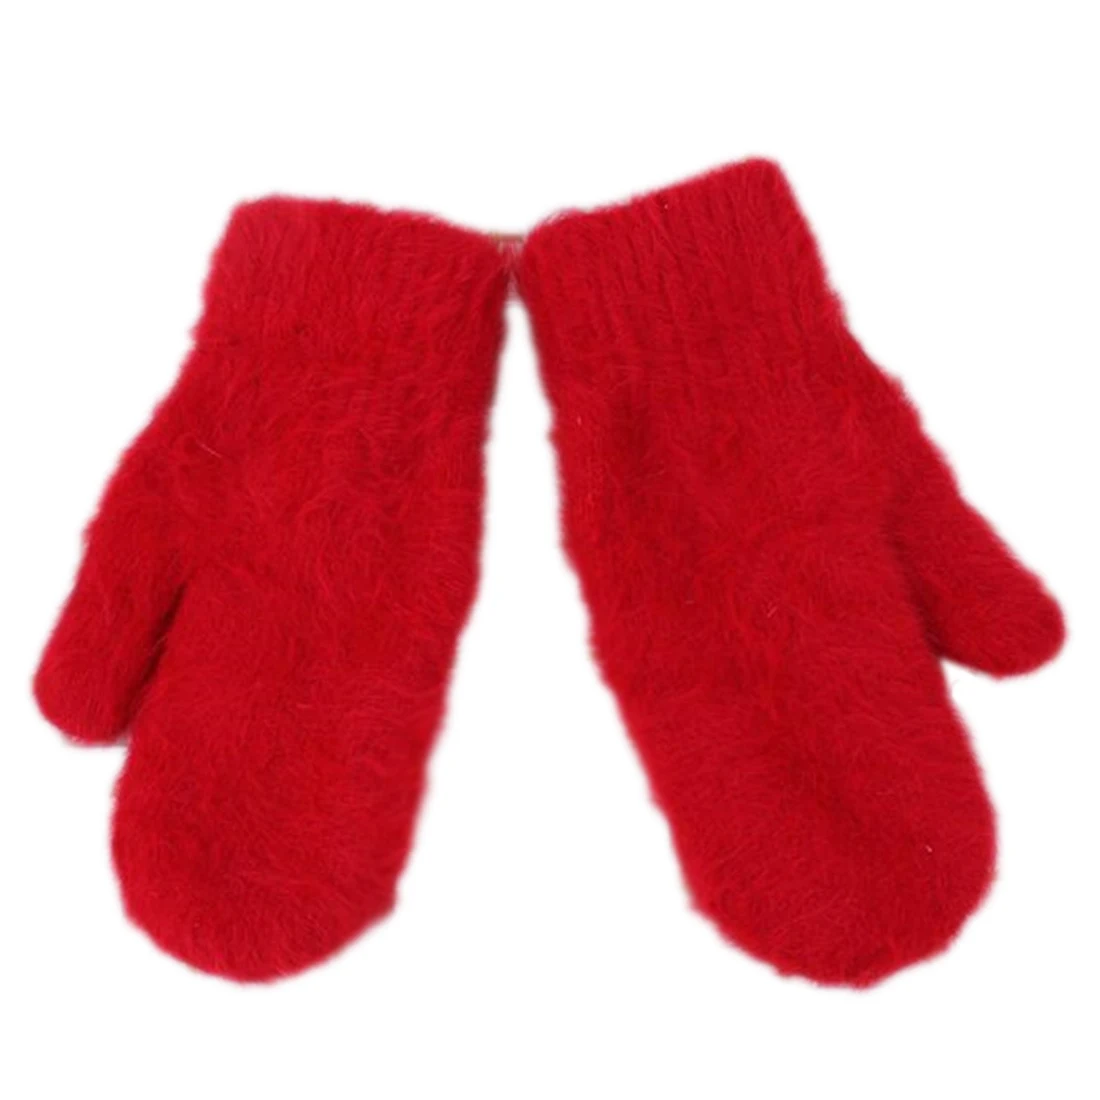 Топ продаж Для женщин Зимние перчатки из мягкой шерсти с кроличьим мехом теплые трикотажные перчатки мода прекрасный теплее девочек